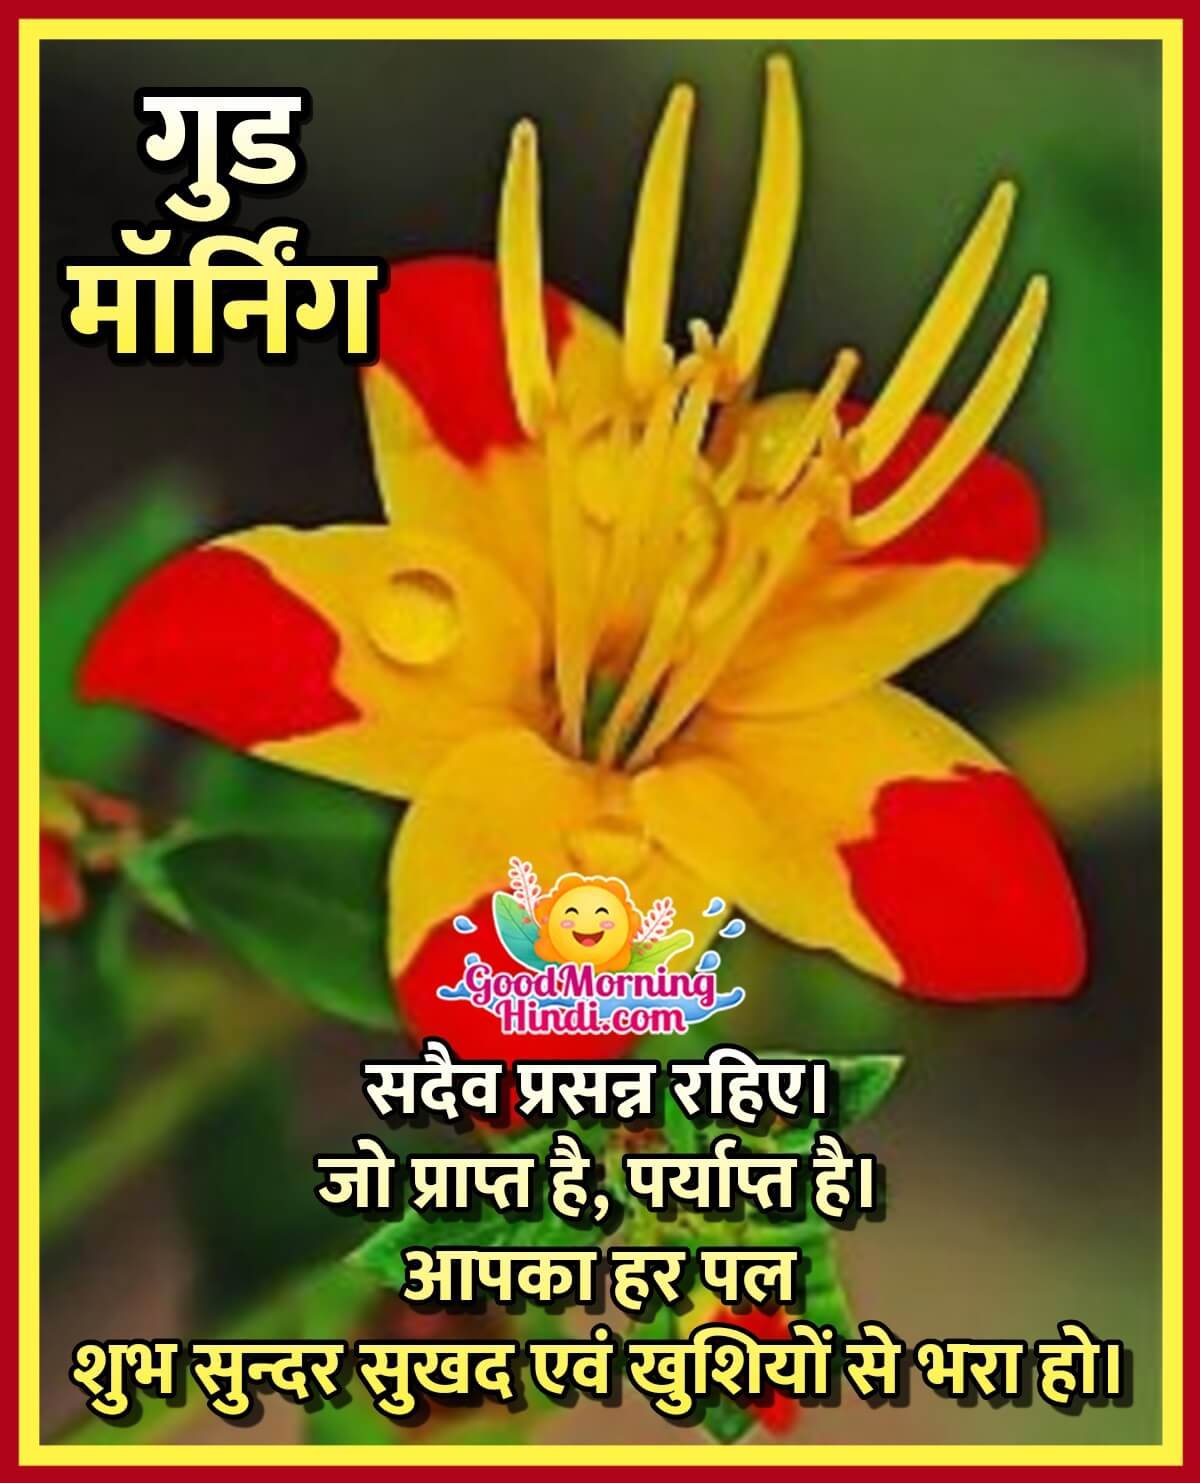 Good Morning Wish In Hindi